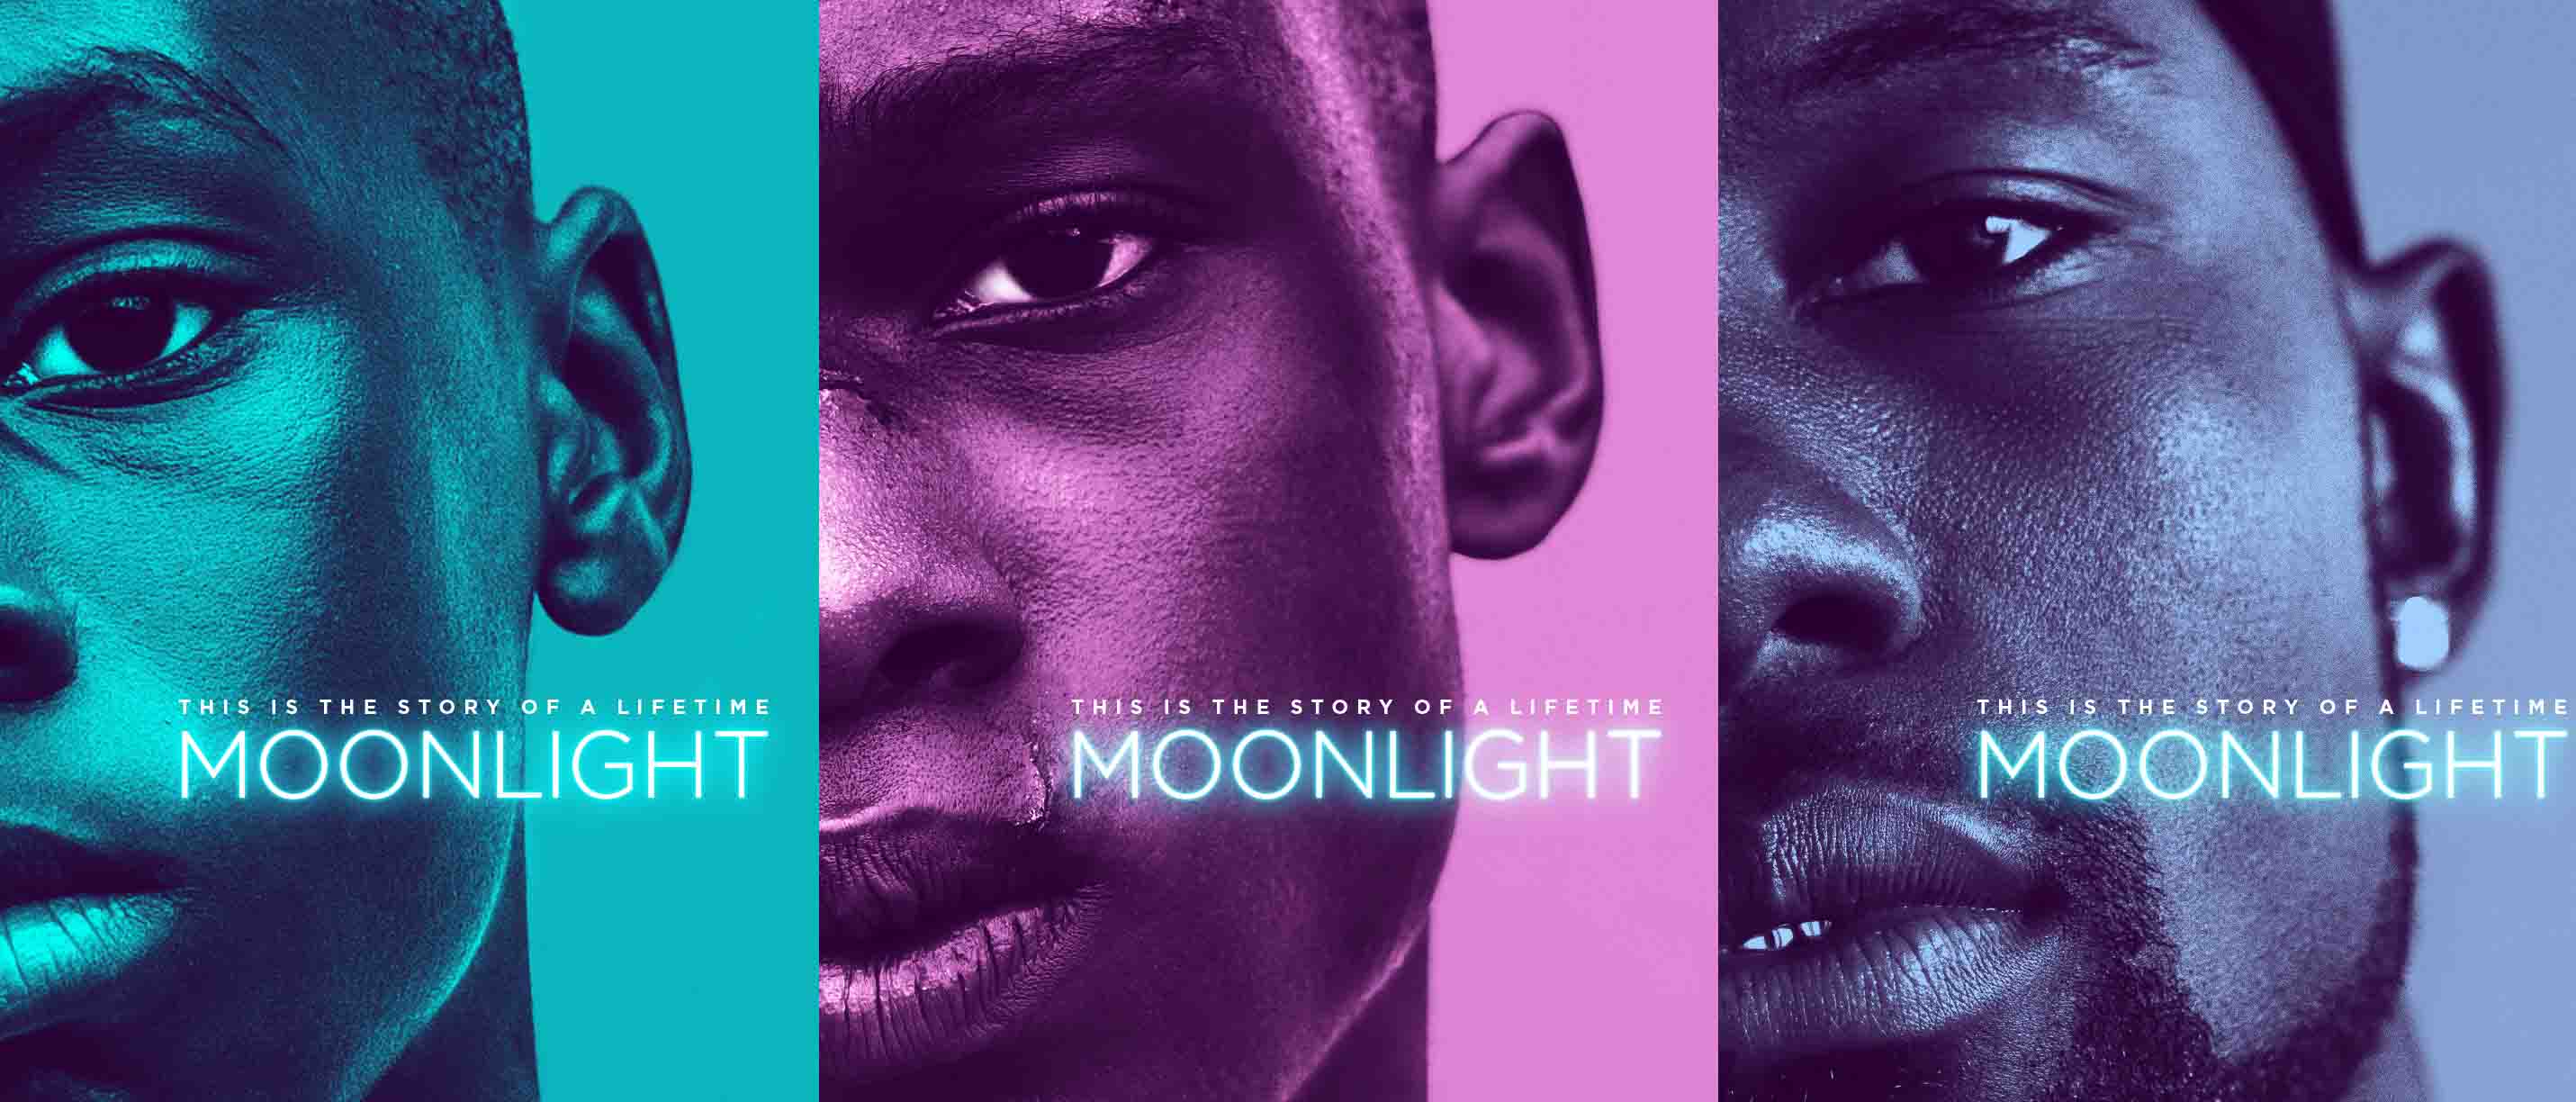 El filme que narra la vida fuerte de un afroamericano que afronta su homosexualidad es descrita como "brillante"